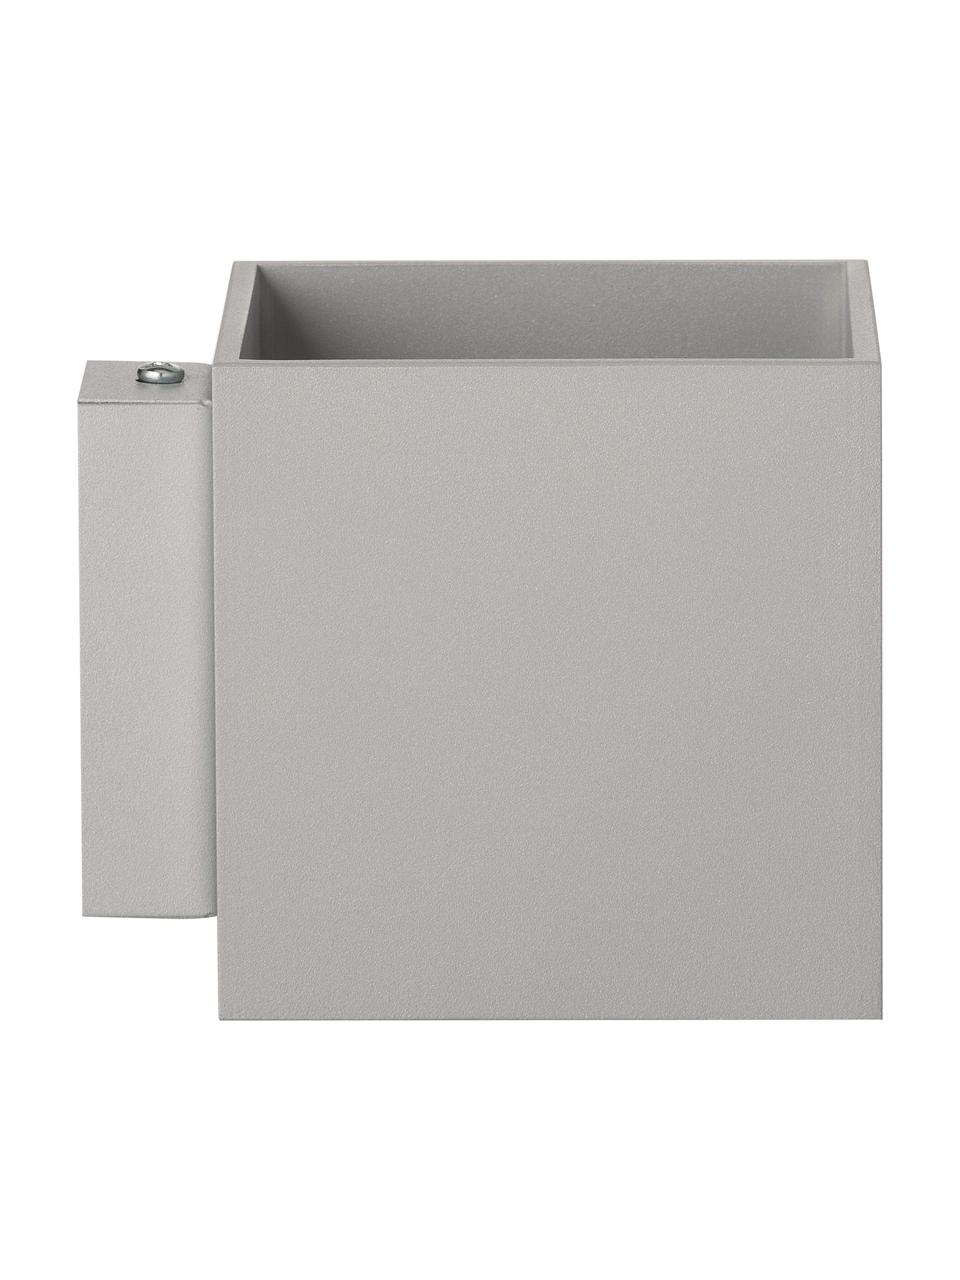 Kleine Wandleuchte Quad in Grau, Lampenschirm: Aluminium, pulverbeschich, Grau, 10 x 10 cm